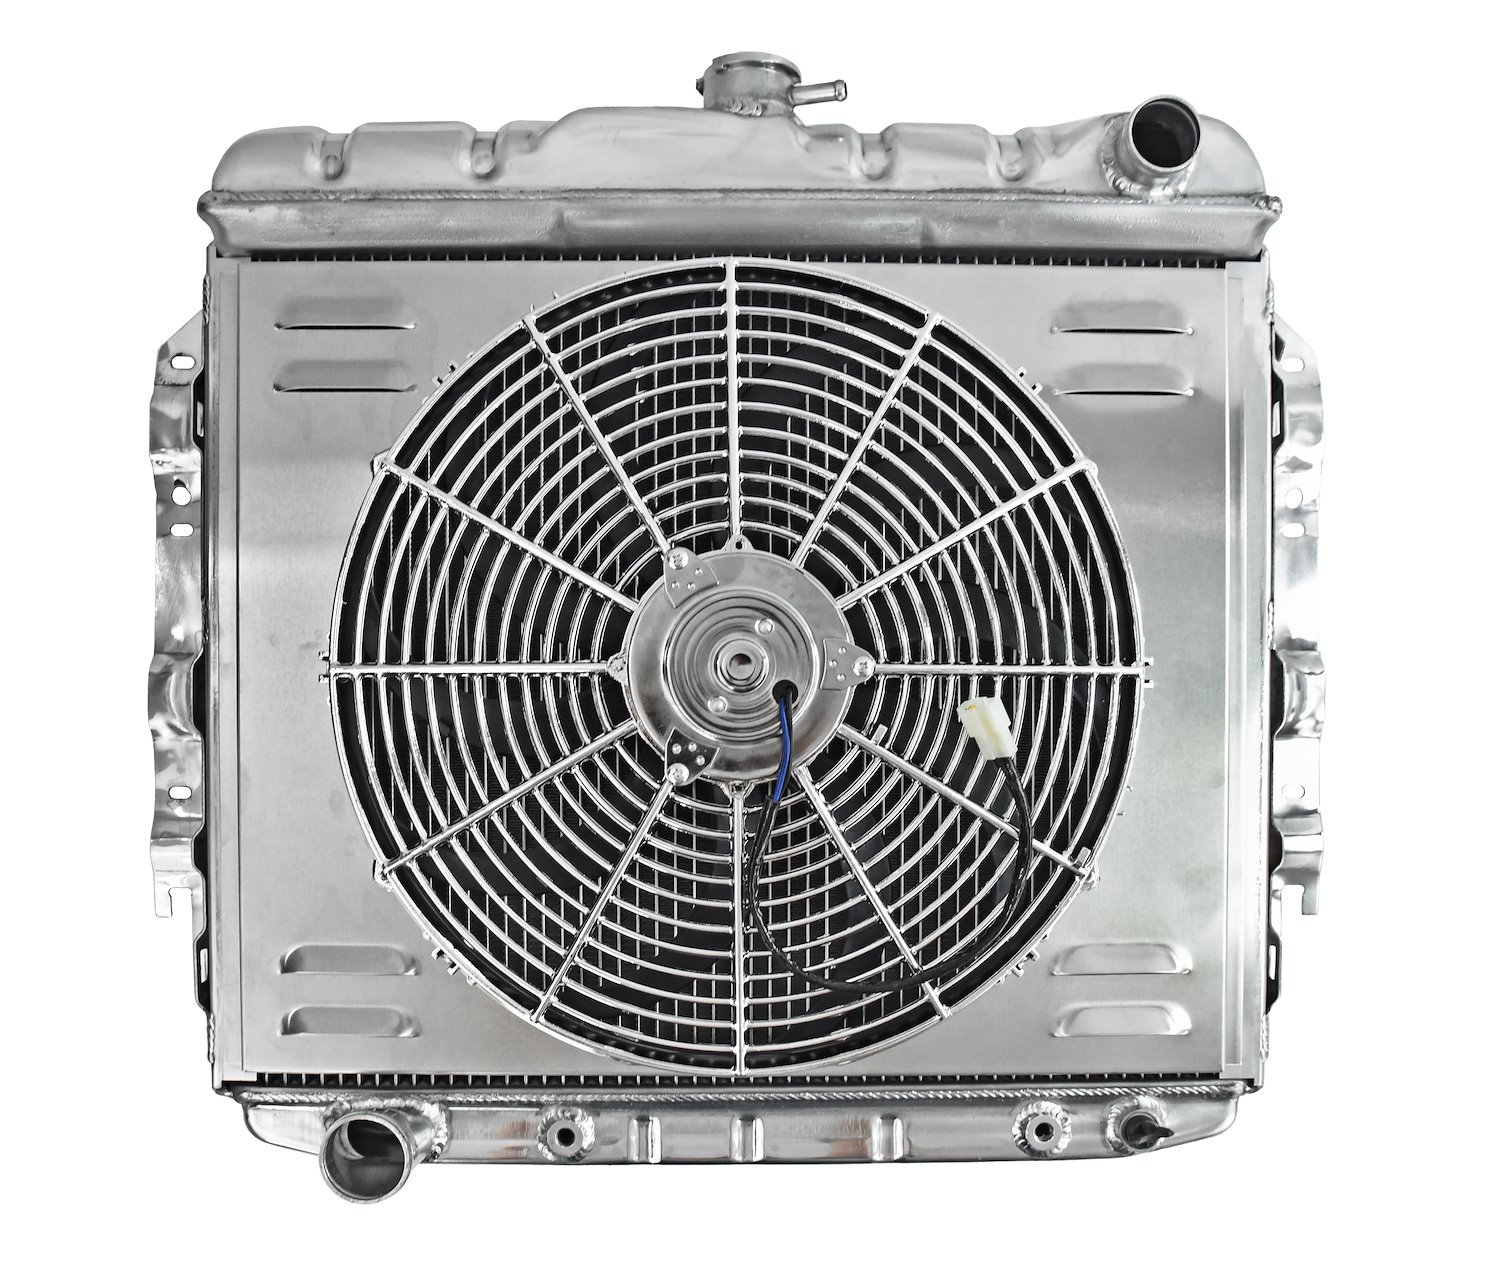 Aluminum Radiator & Fan Combo for Select 1966-1969 Mopar B Bodies With 426 Engine [16 in. Fan]